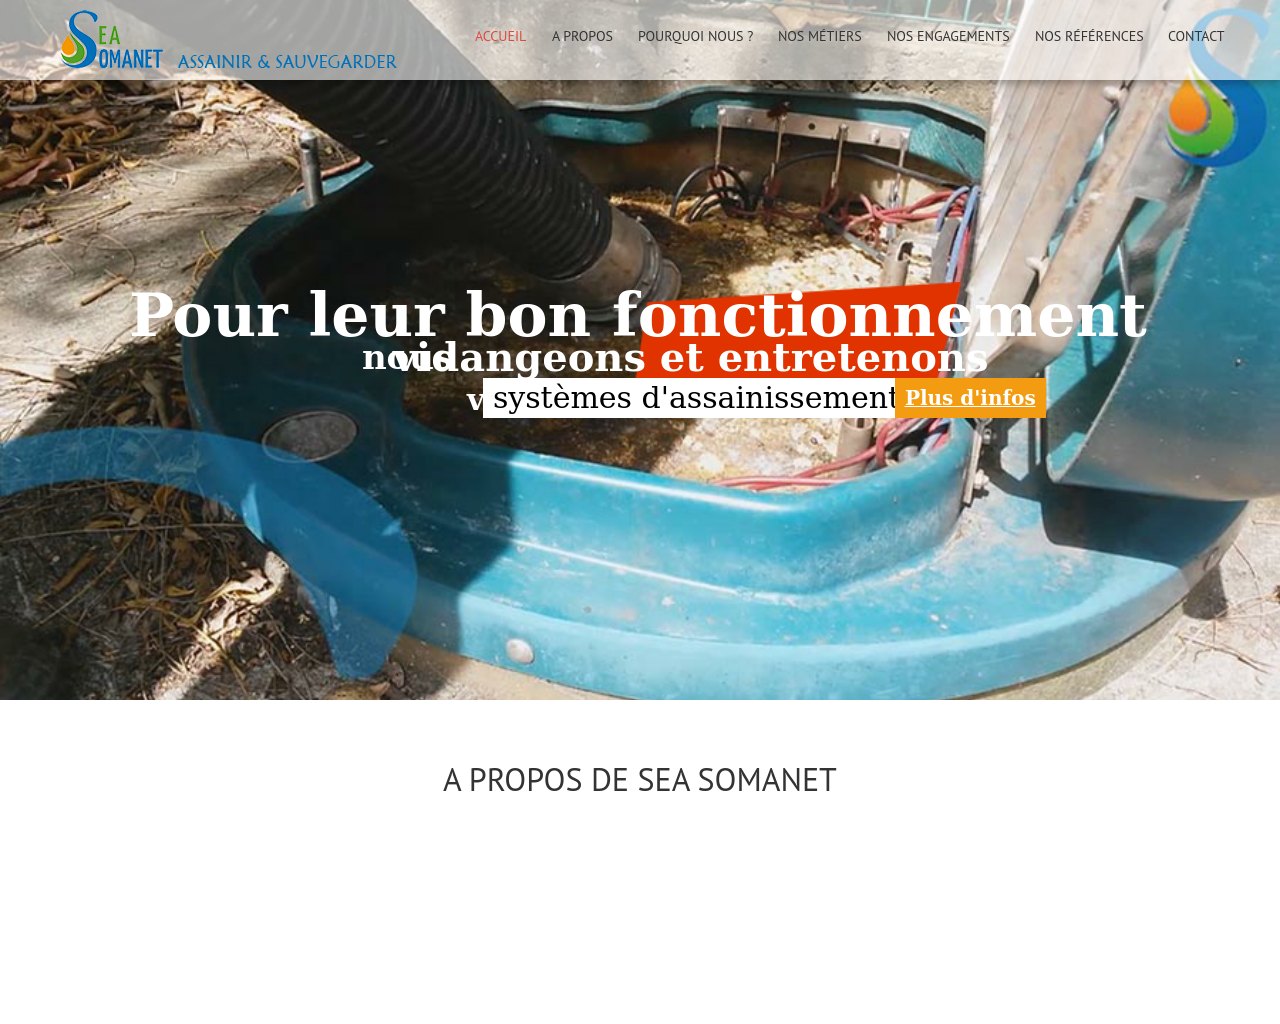 Site de l'image vilea.fr en 1280x1024